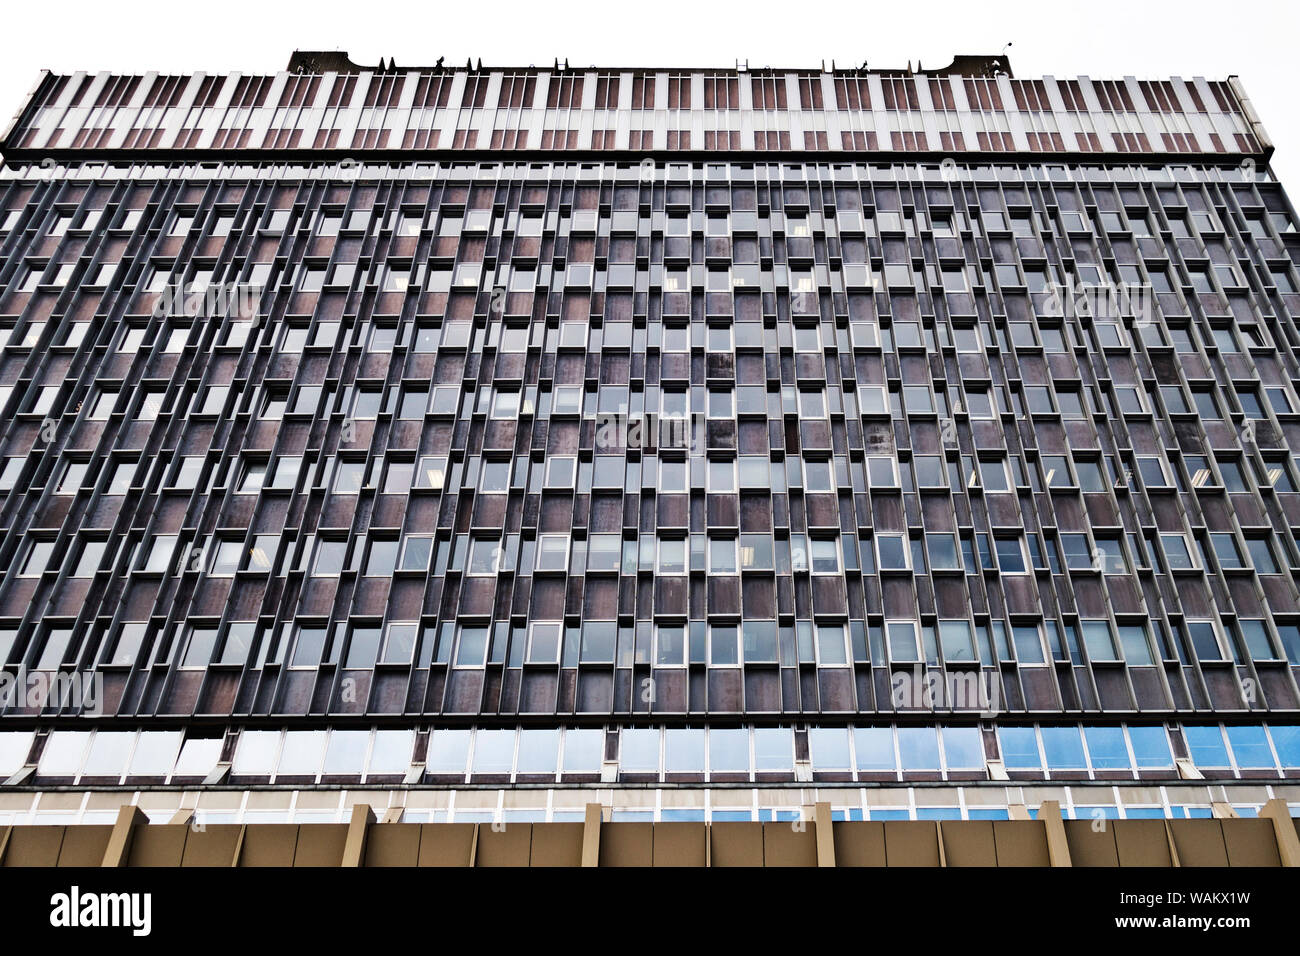 Edificio in stile costruttivista dell'epoca comunista della Cecoslovacchia Foto Stock